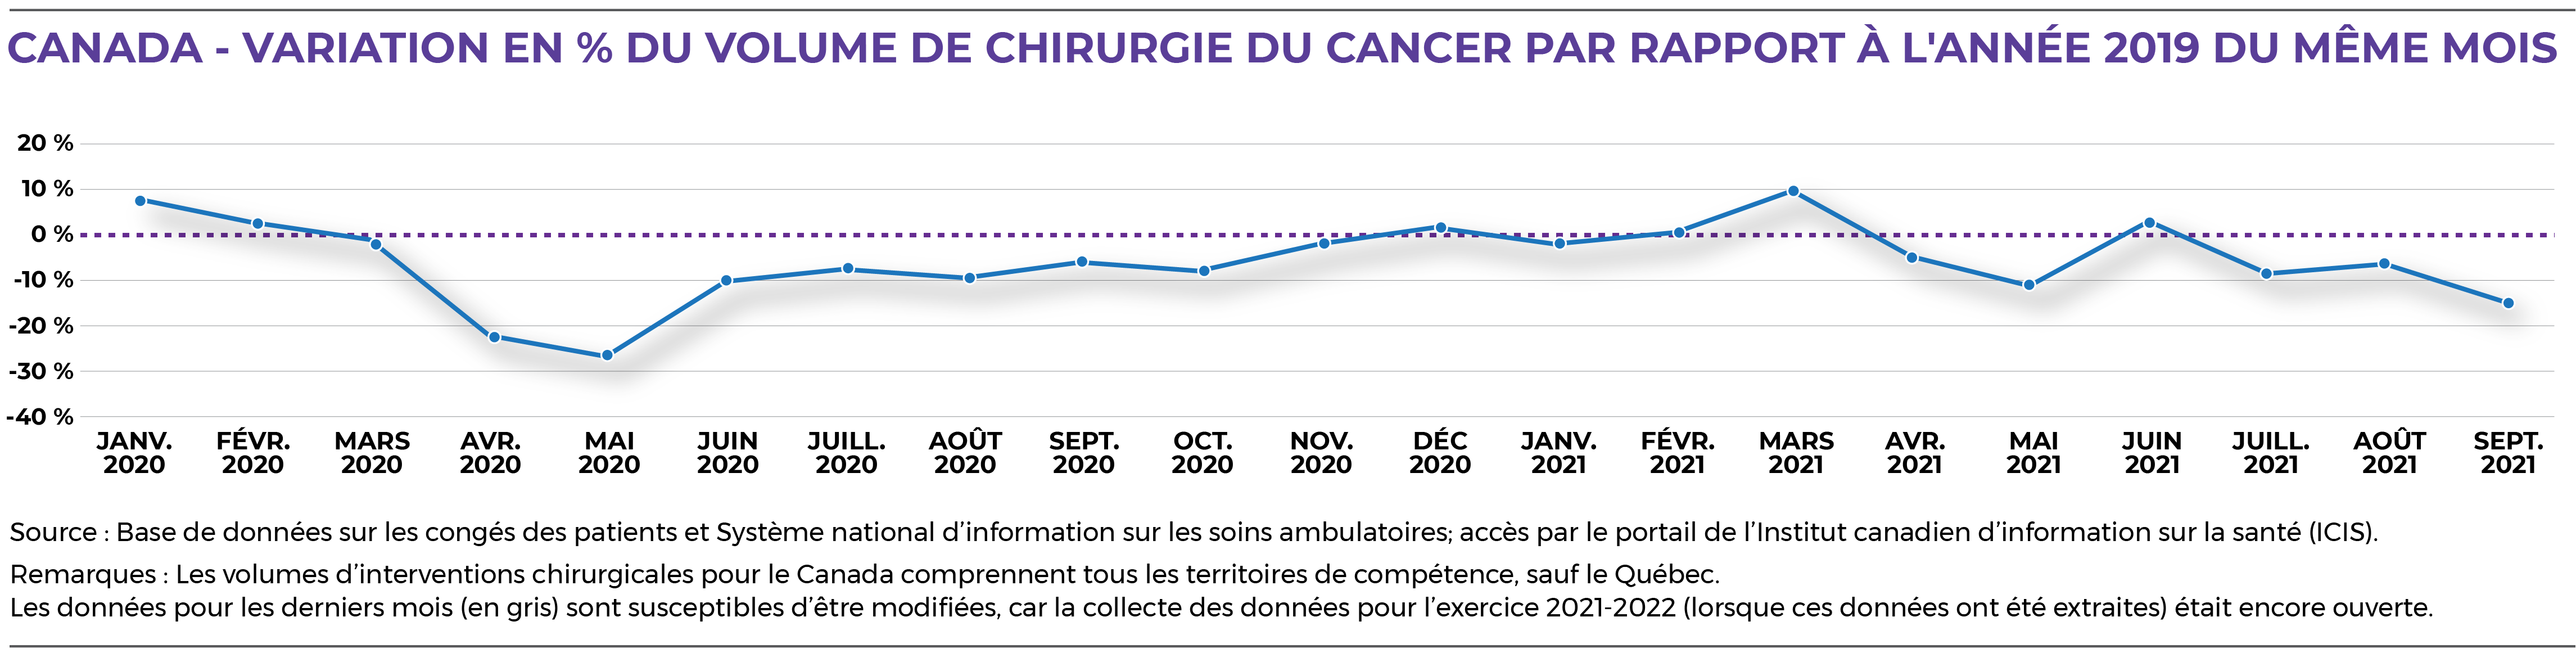 VARIATION EN % DU VOLUME DE CHIRURGIE DU CANCER PAR RAPPORT À L'ANNÉE 2019 DU MÊME MOIS